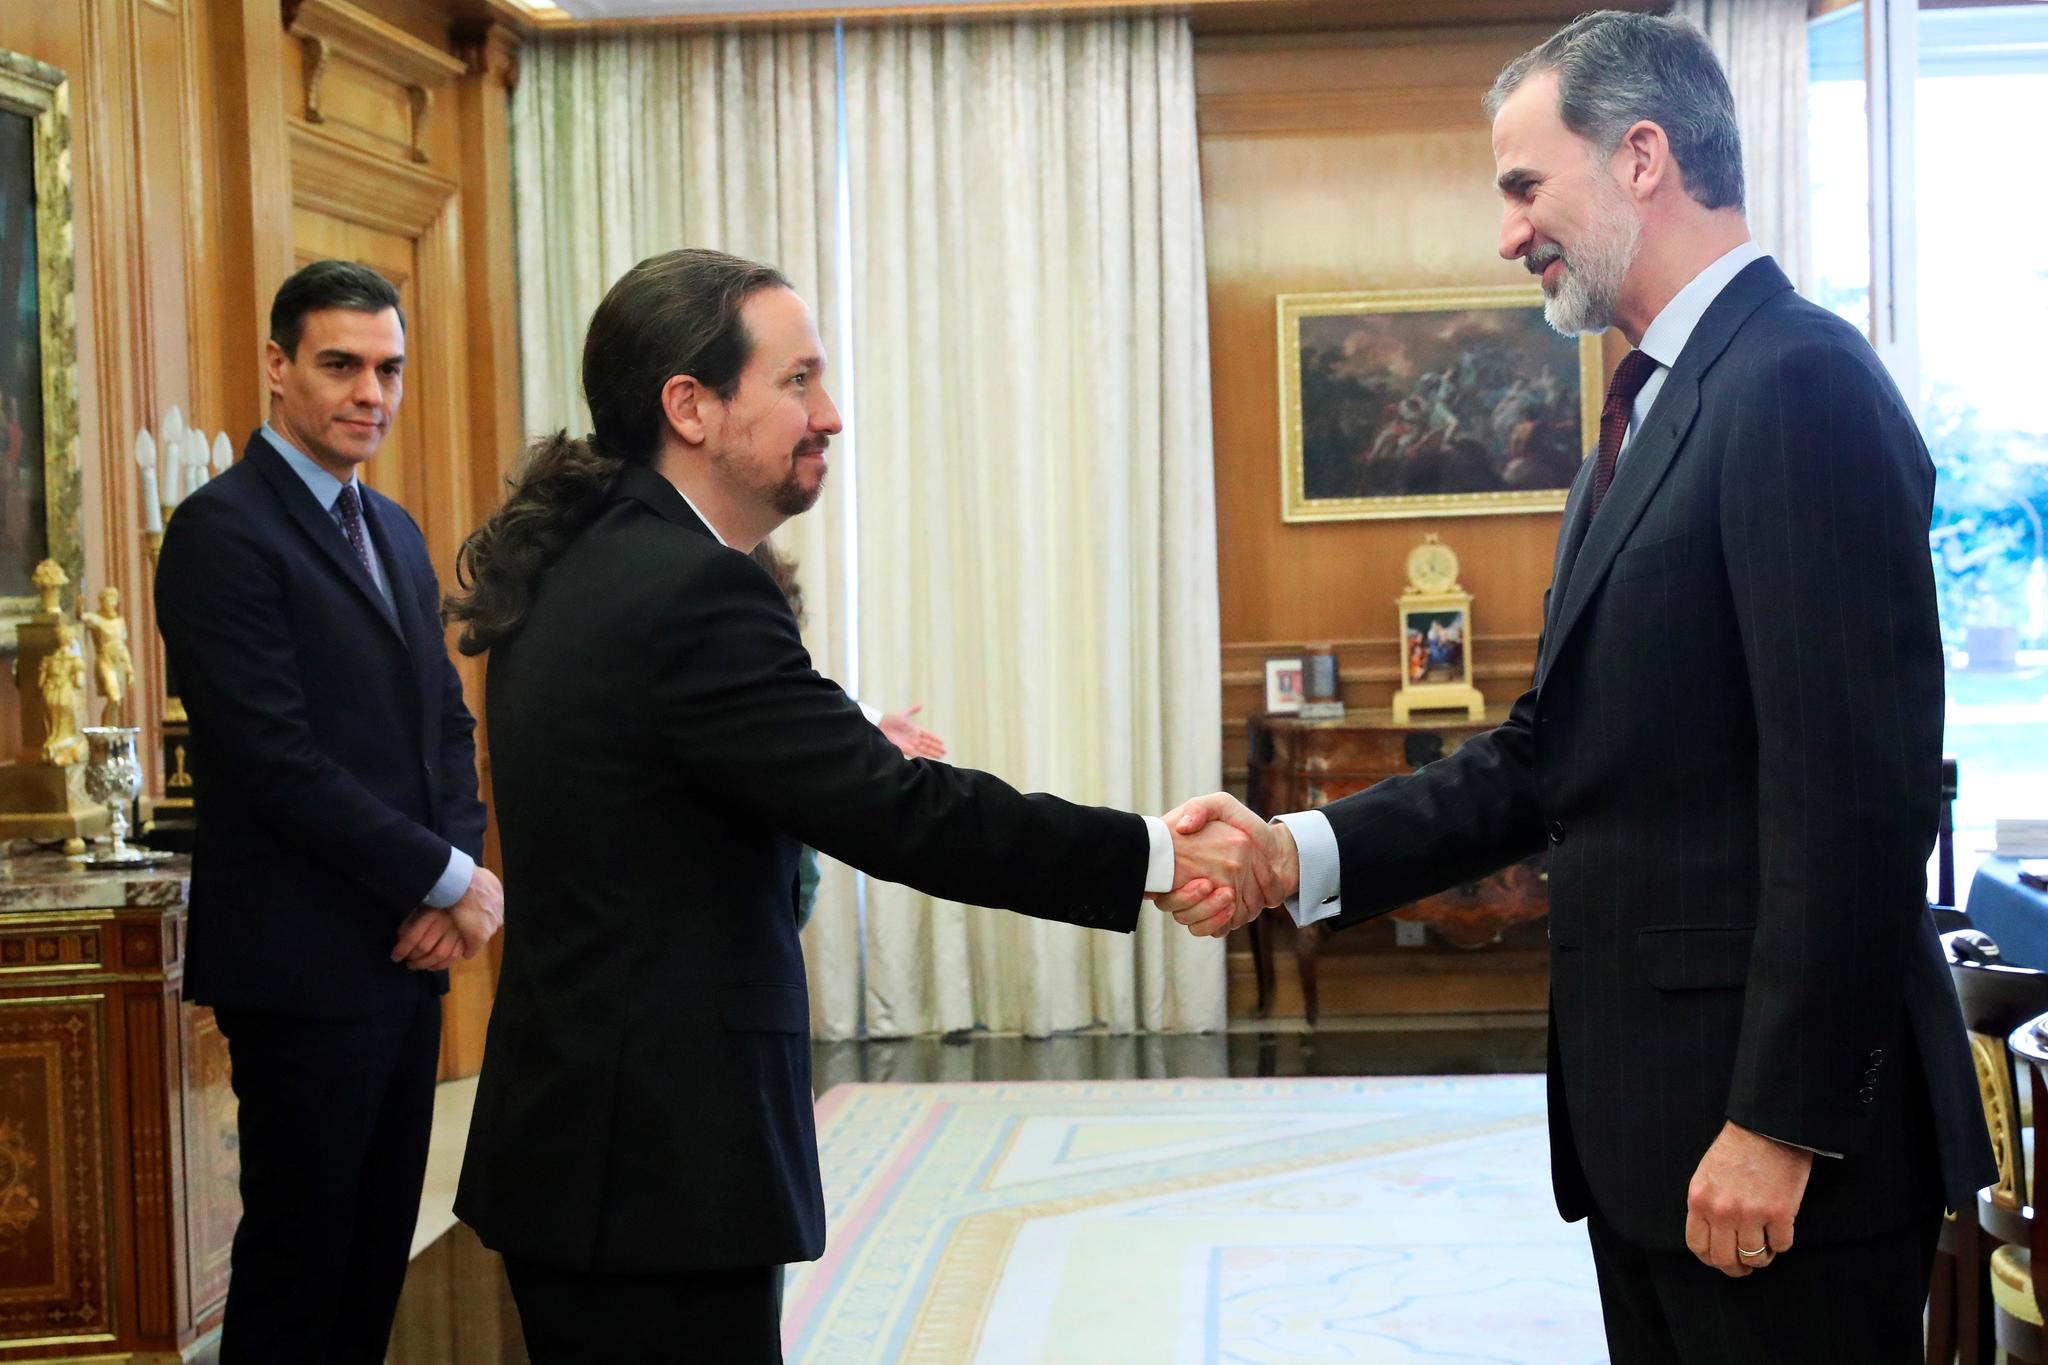 Pablo Iglesias saluda al Rey, en marzo de 2020, ante la atenta mirada del presidente del Gobierno, durante una reunión en el Palacio de La Zarzuela. EFE